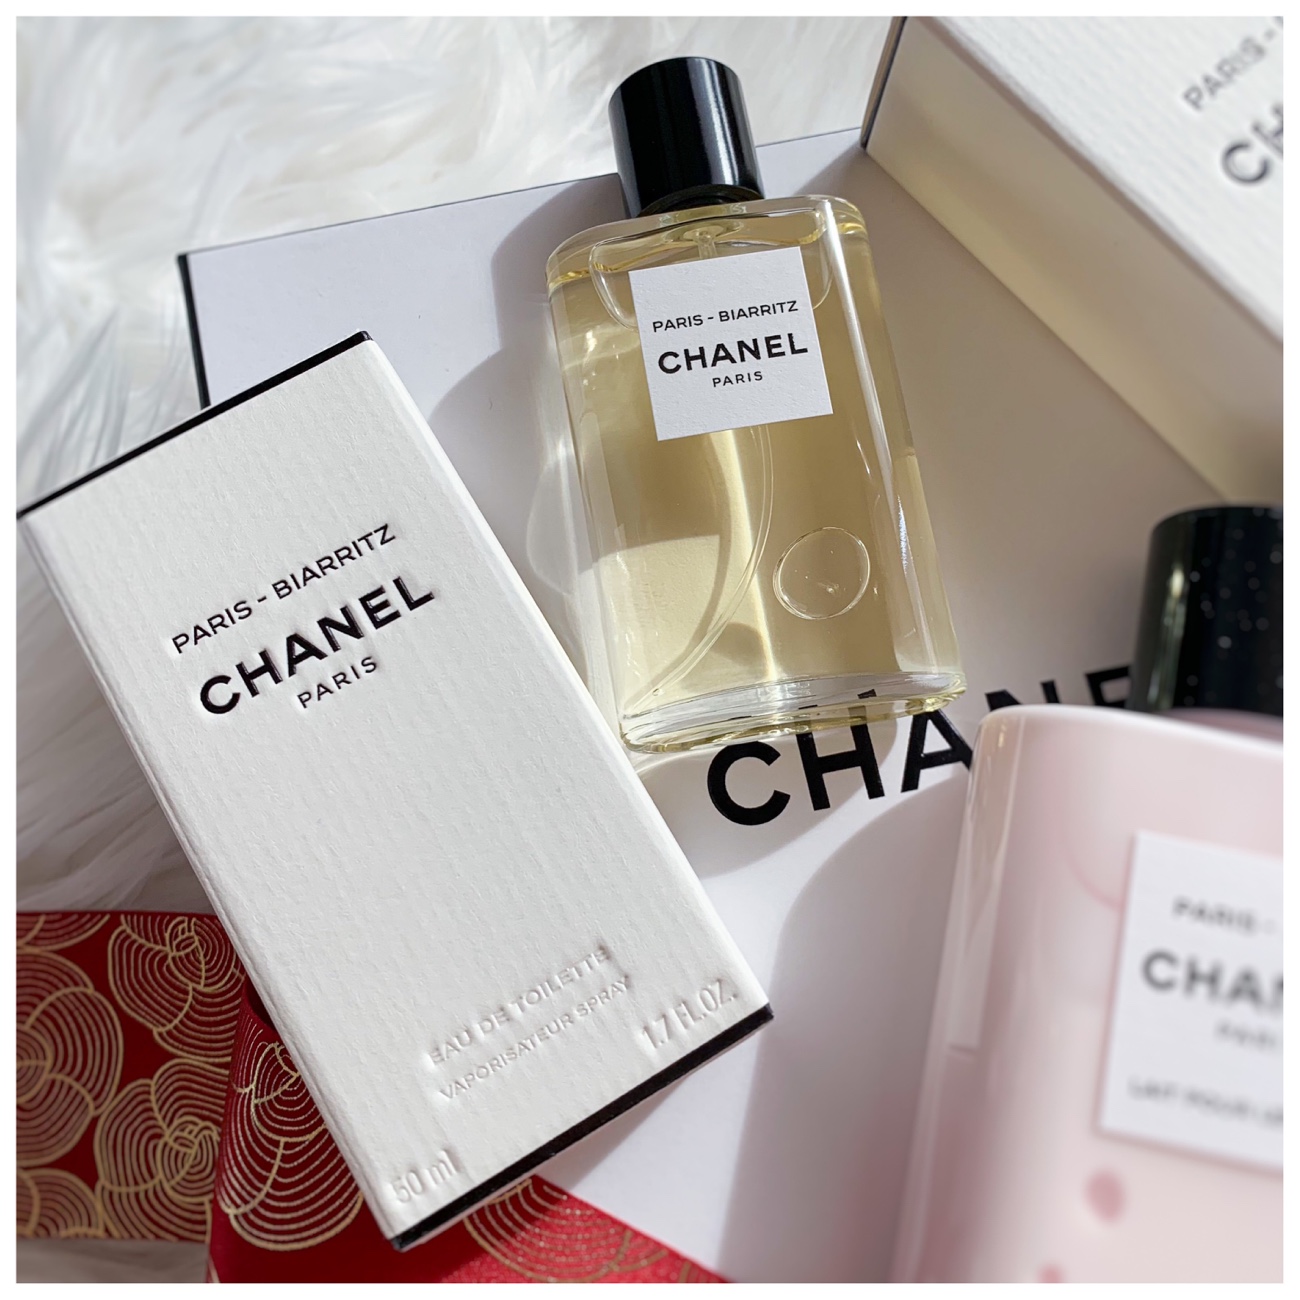 Les Eaux de Chanel Paris-Paris and Paris-Biarritz